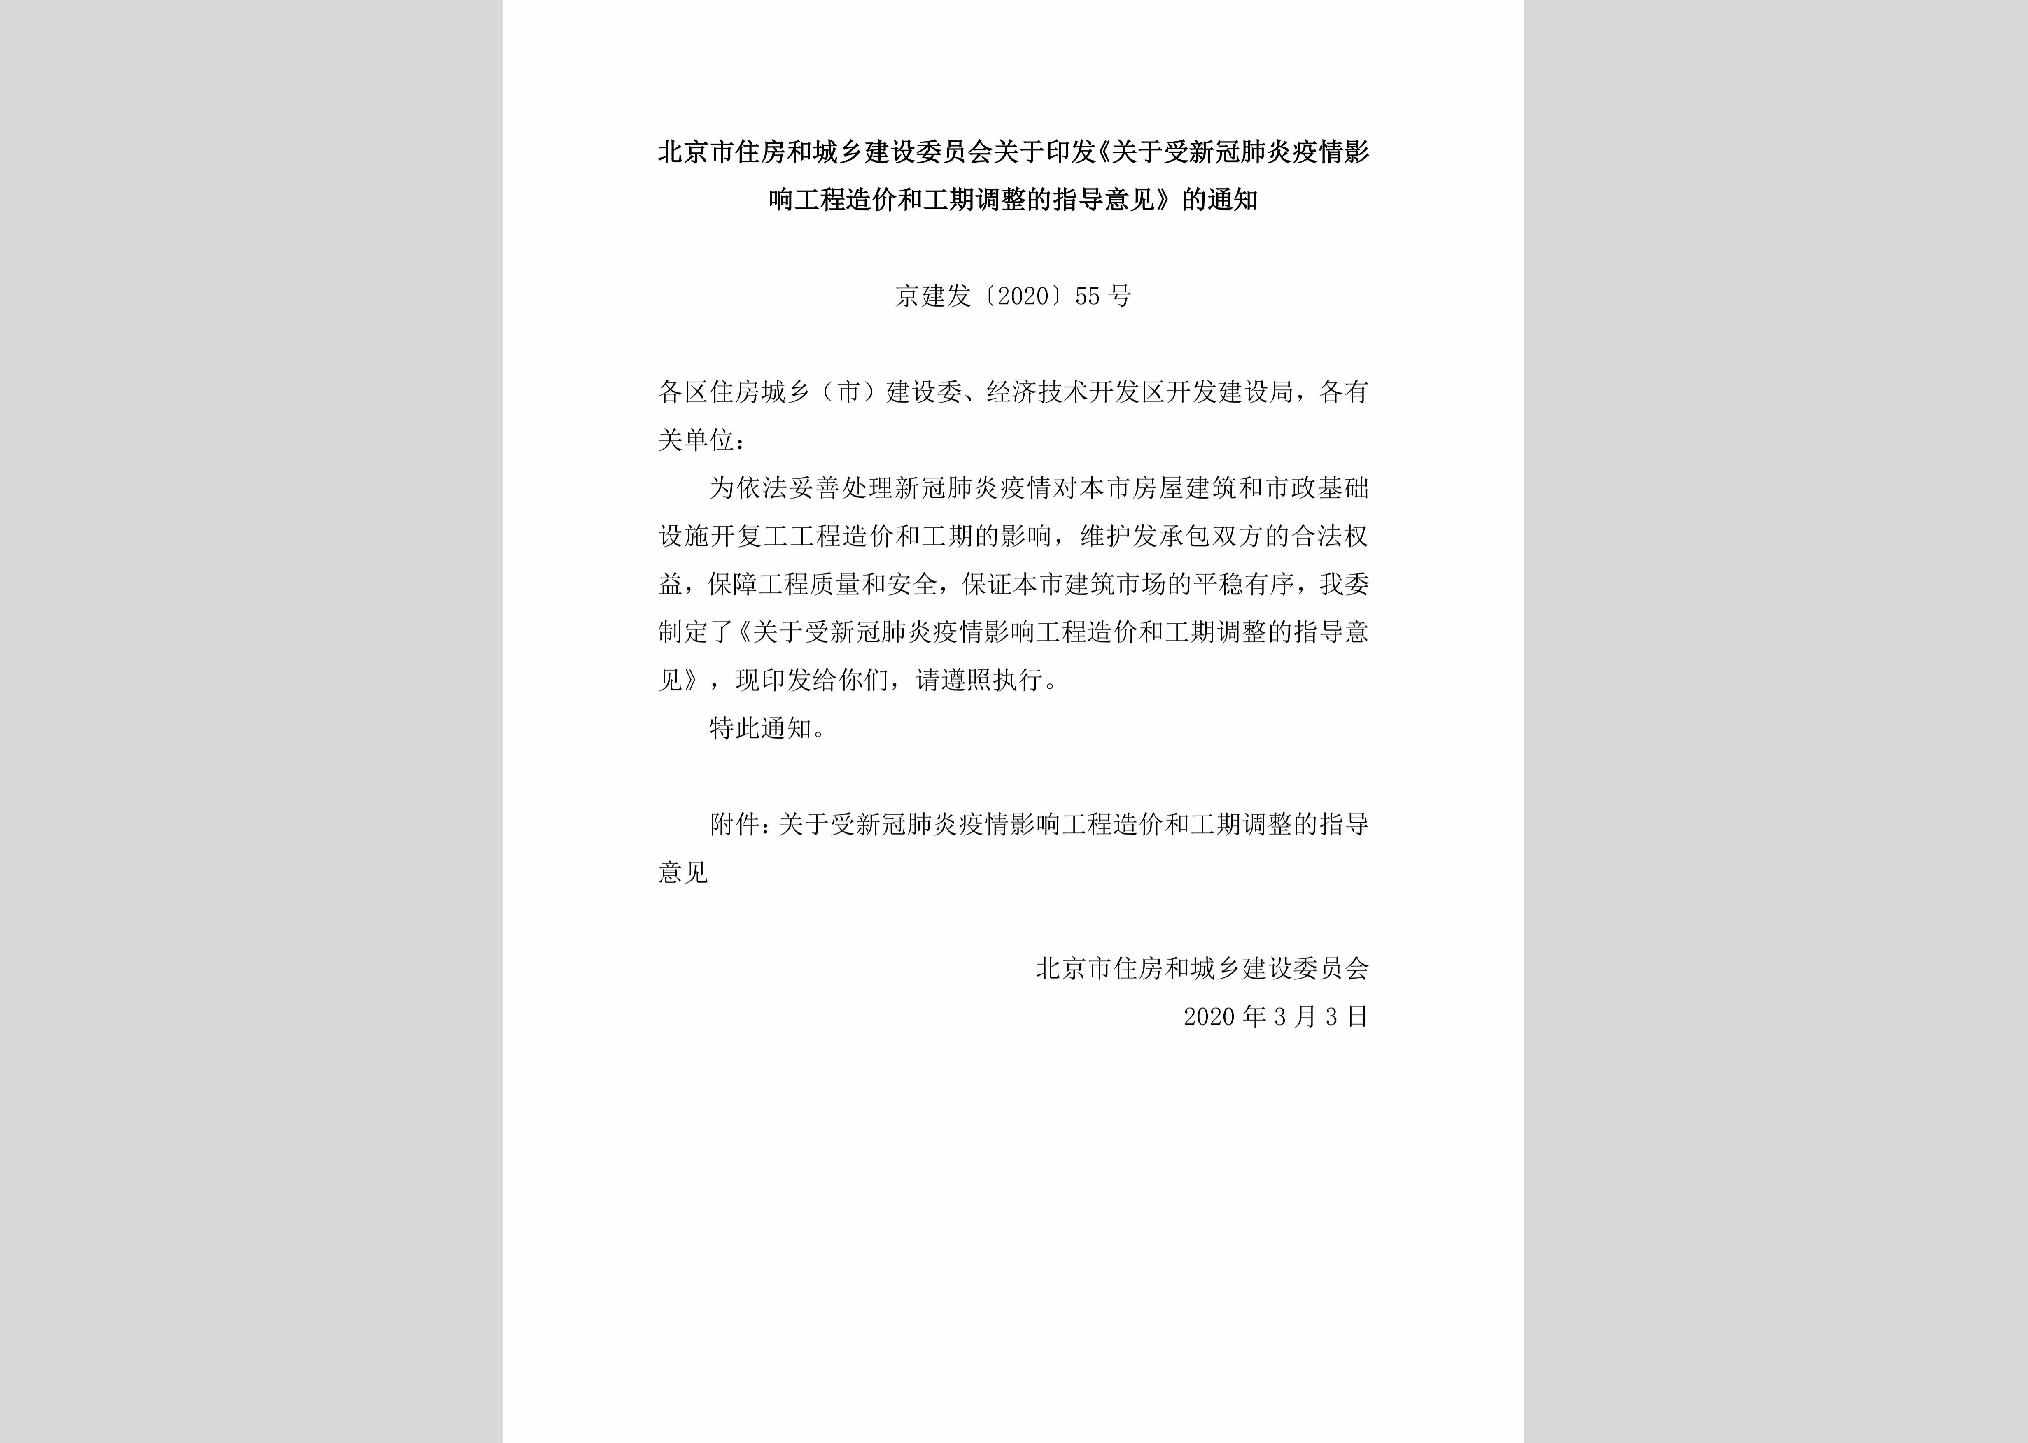 京建发[2020]55号：北京市住房和城乡建设委员会关于印发《关于受新冠肺炎疫情影响工程造价和工期调整的指导意见》的通知